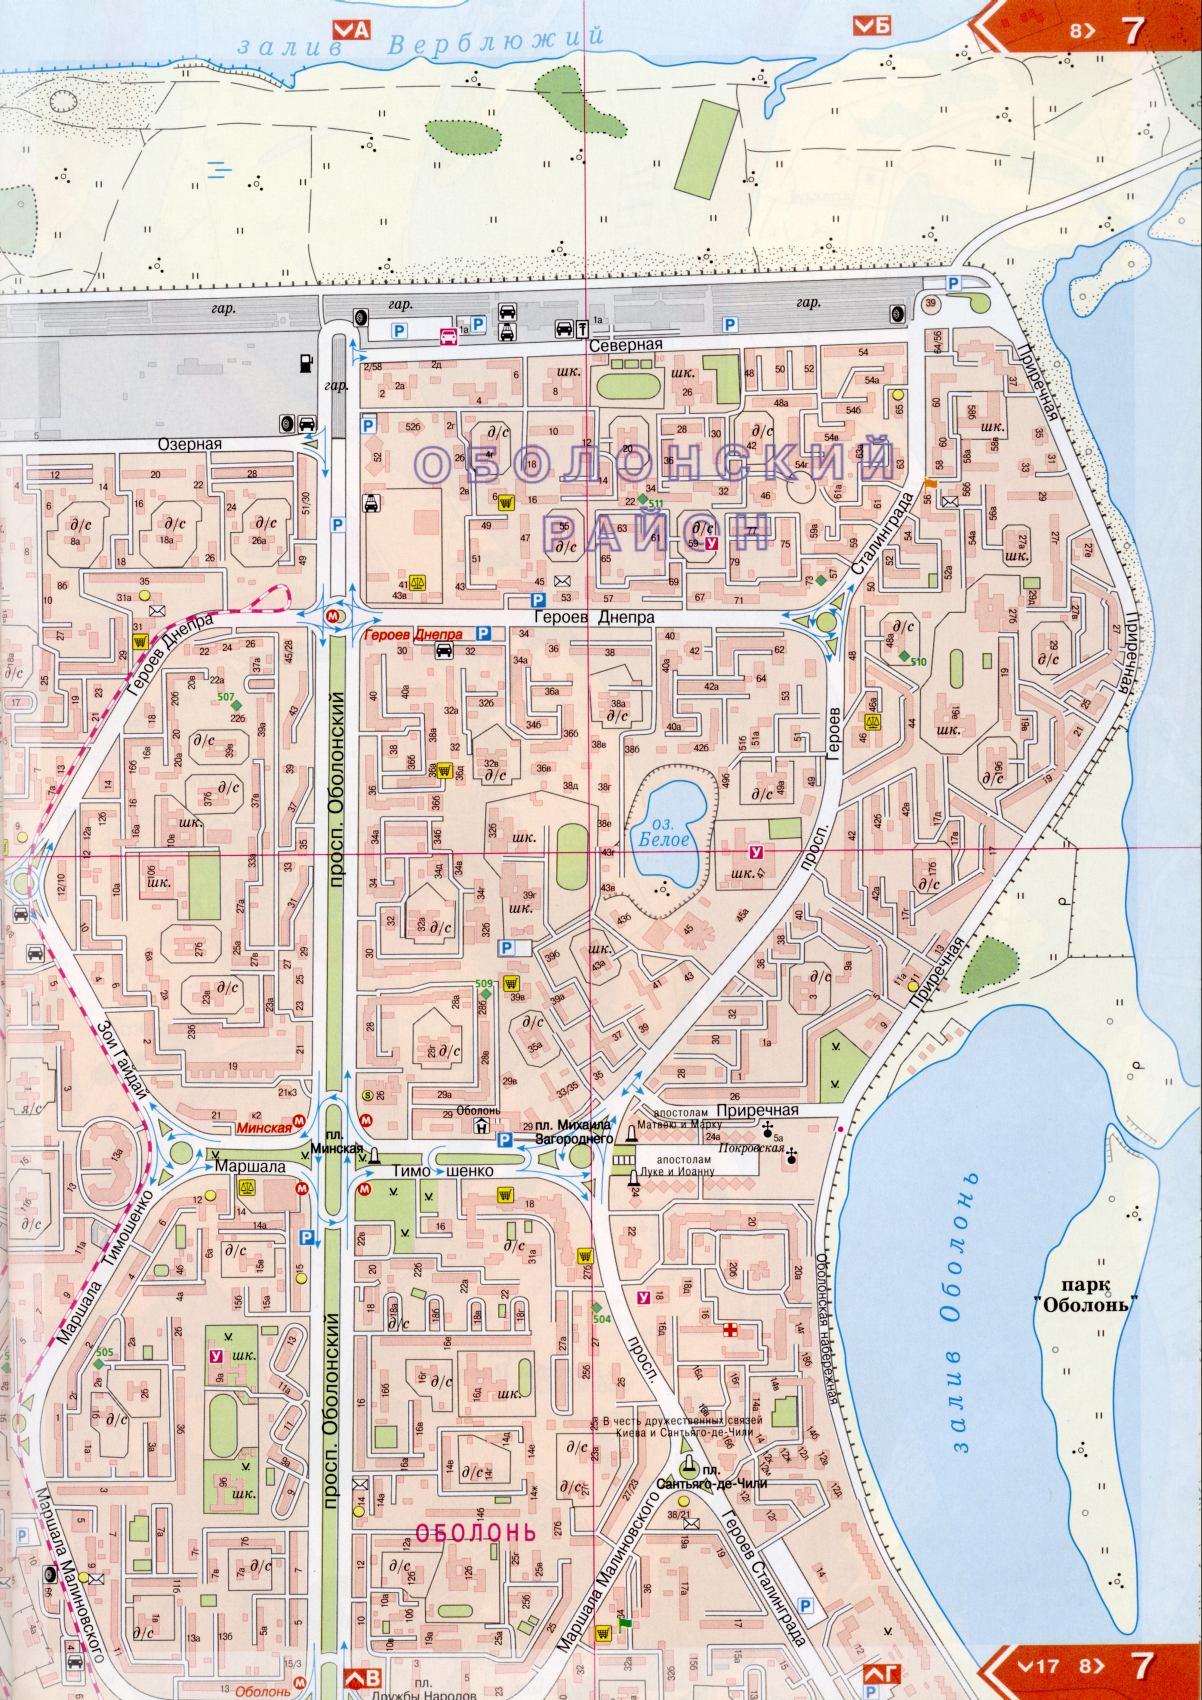 Kiew Karte Details 1cm = 150m für 45 Blatt. Karte von Kiew aus dem Atlas von Autobahnen. Laden Sie eine detaillierte Karte, E0